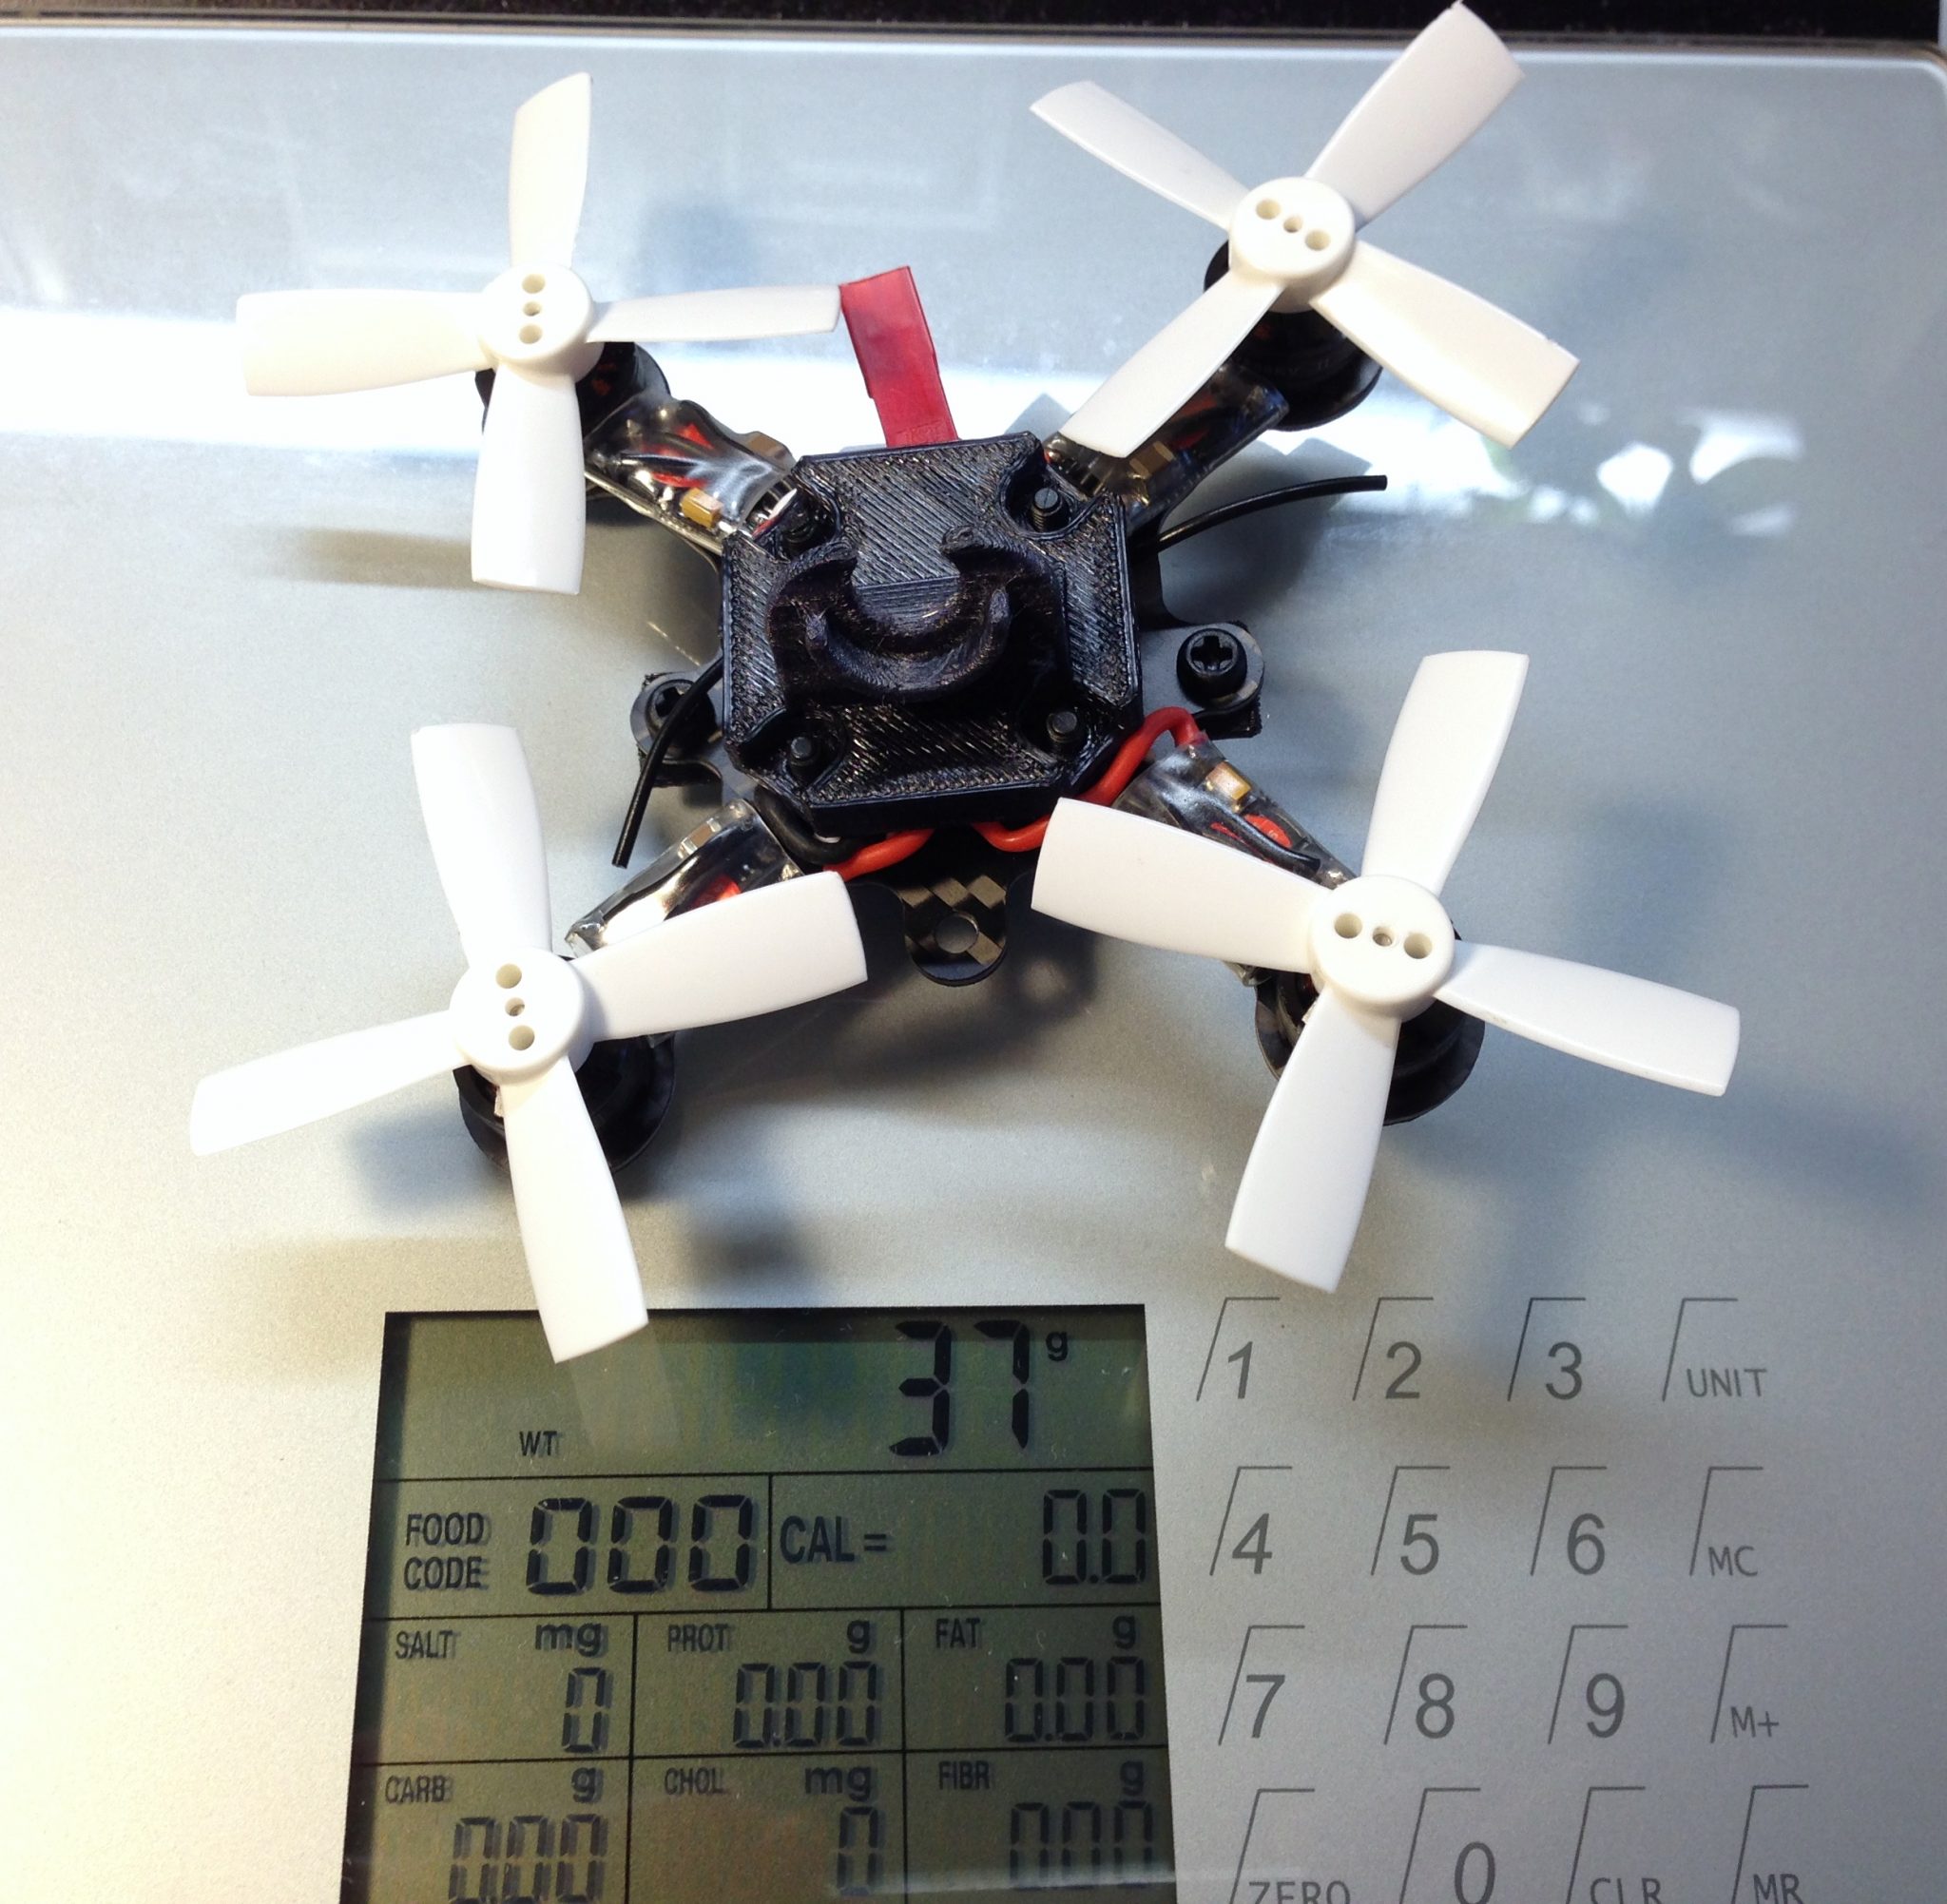 Pico X – FPV Racing Drone Frame – Flex RC